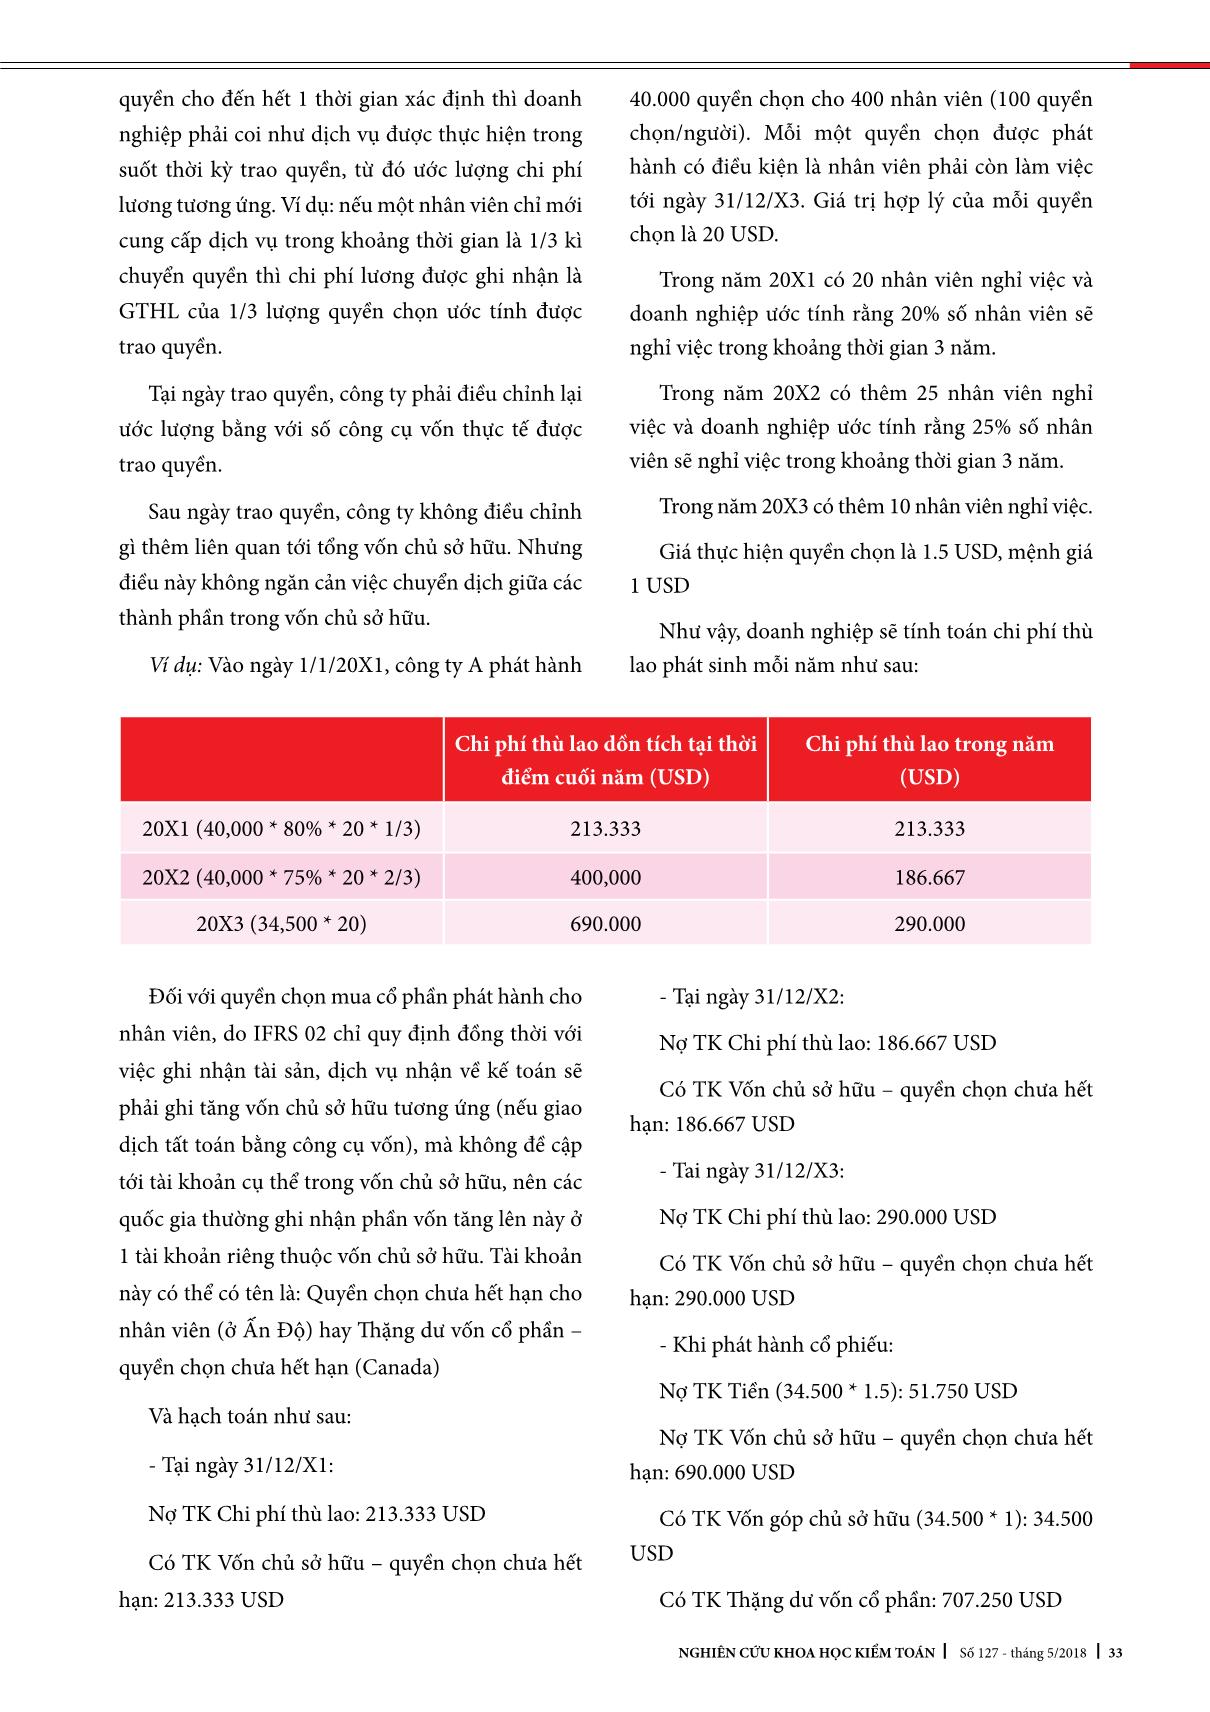 Kế toán phát hành cổ phiếu cho nhân viên ở Việt Nam trang 4